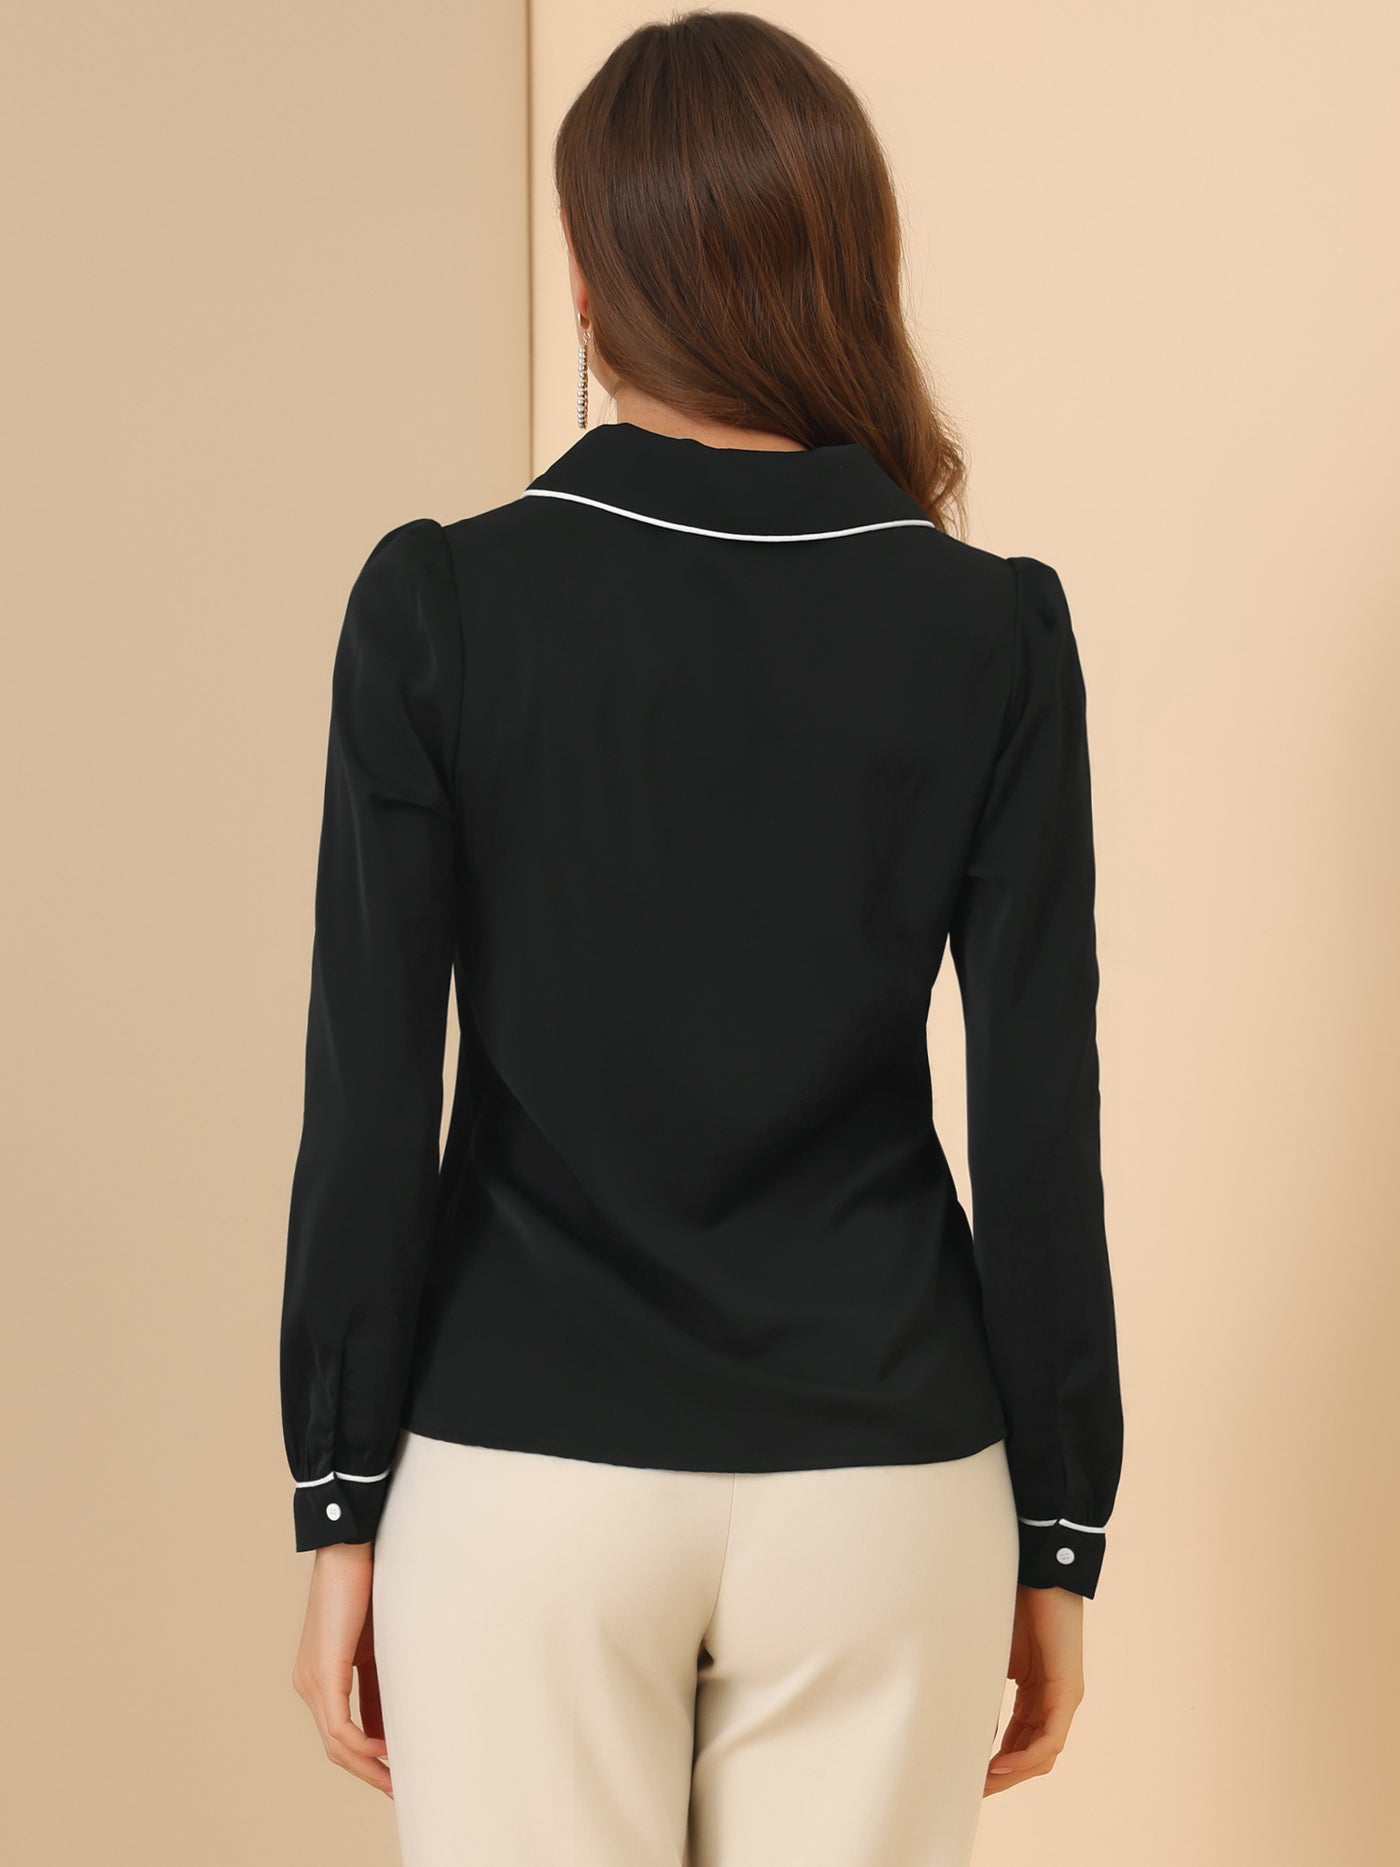 Allegra K Peter Pan Collar Long Sleeve Elegant Button Down Work Shirt